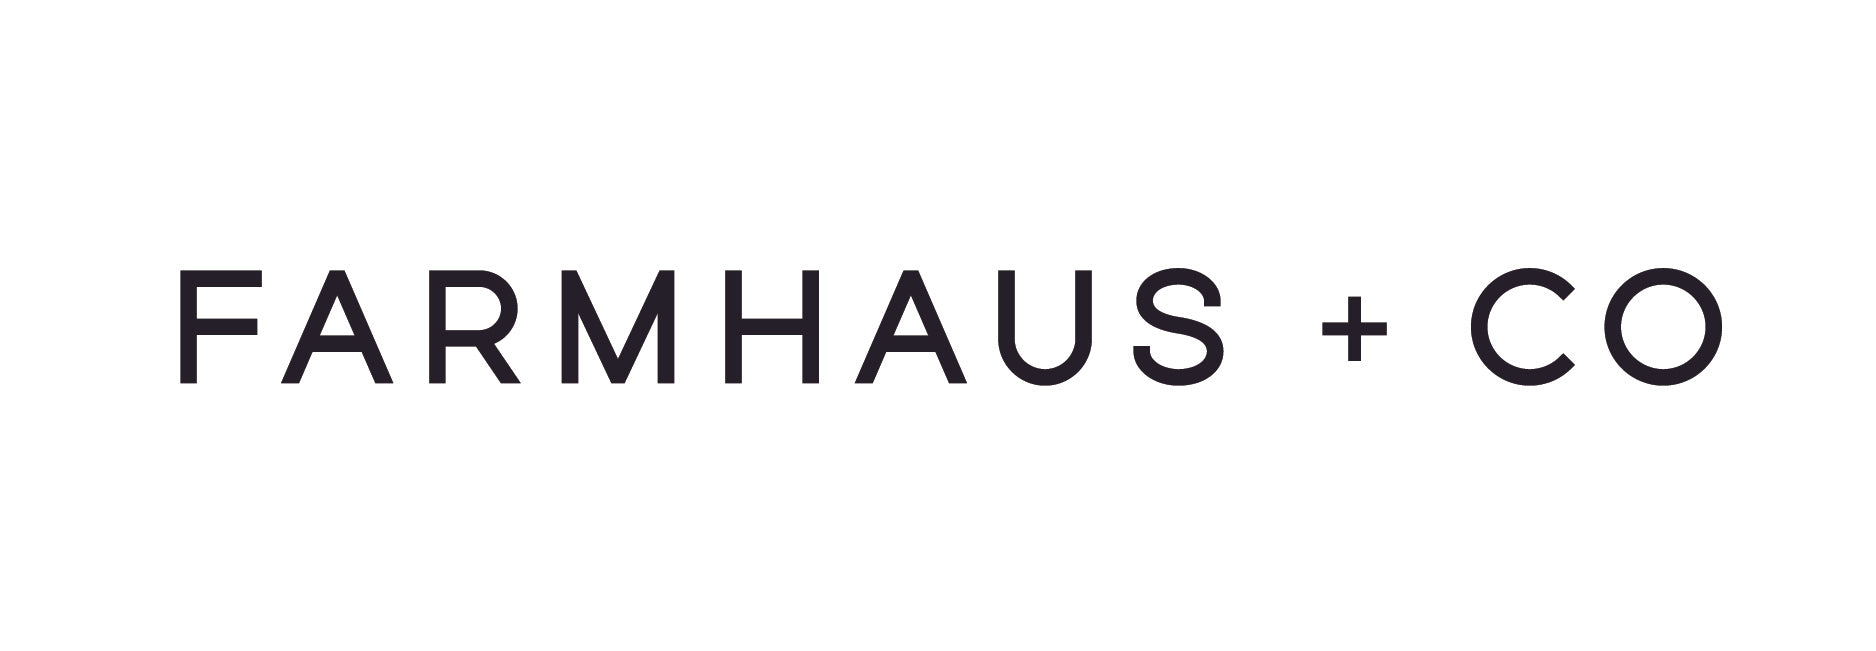 Farmhaus + Co